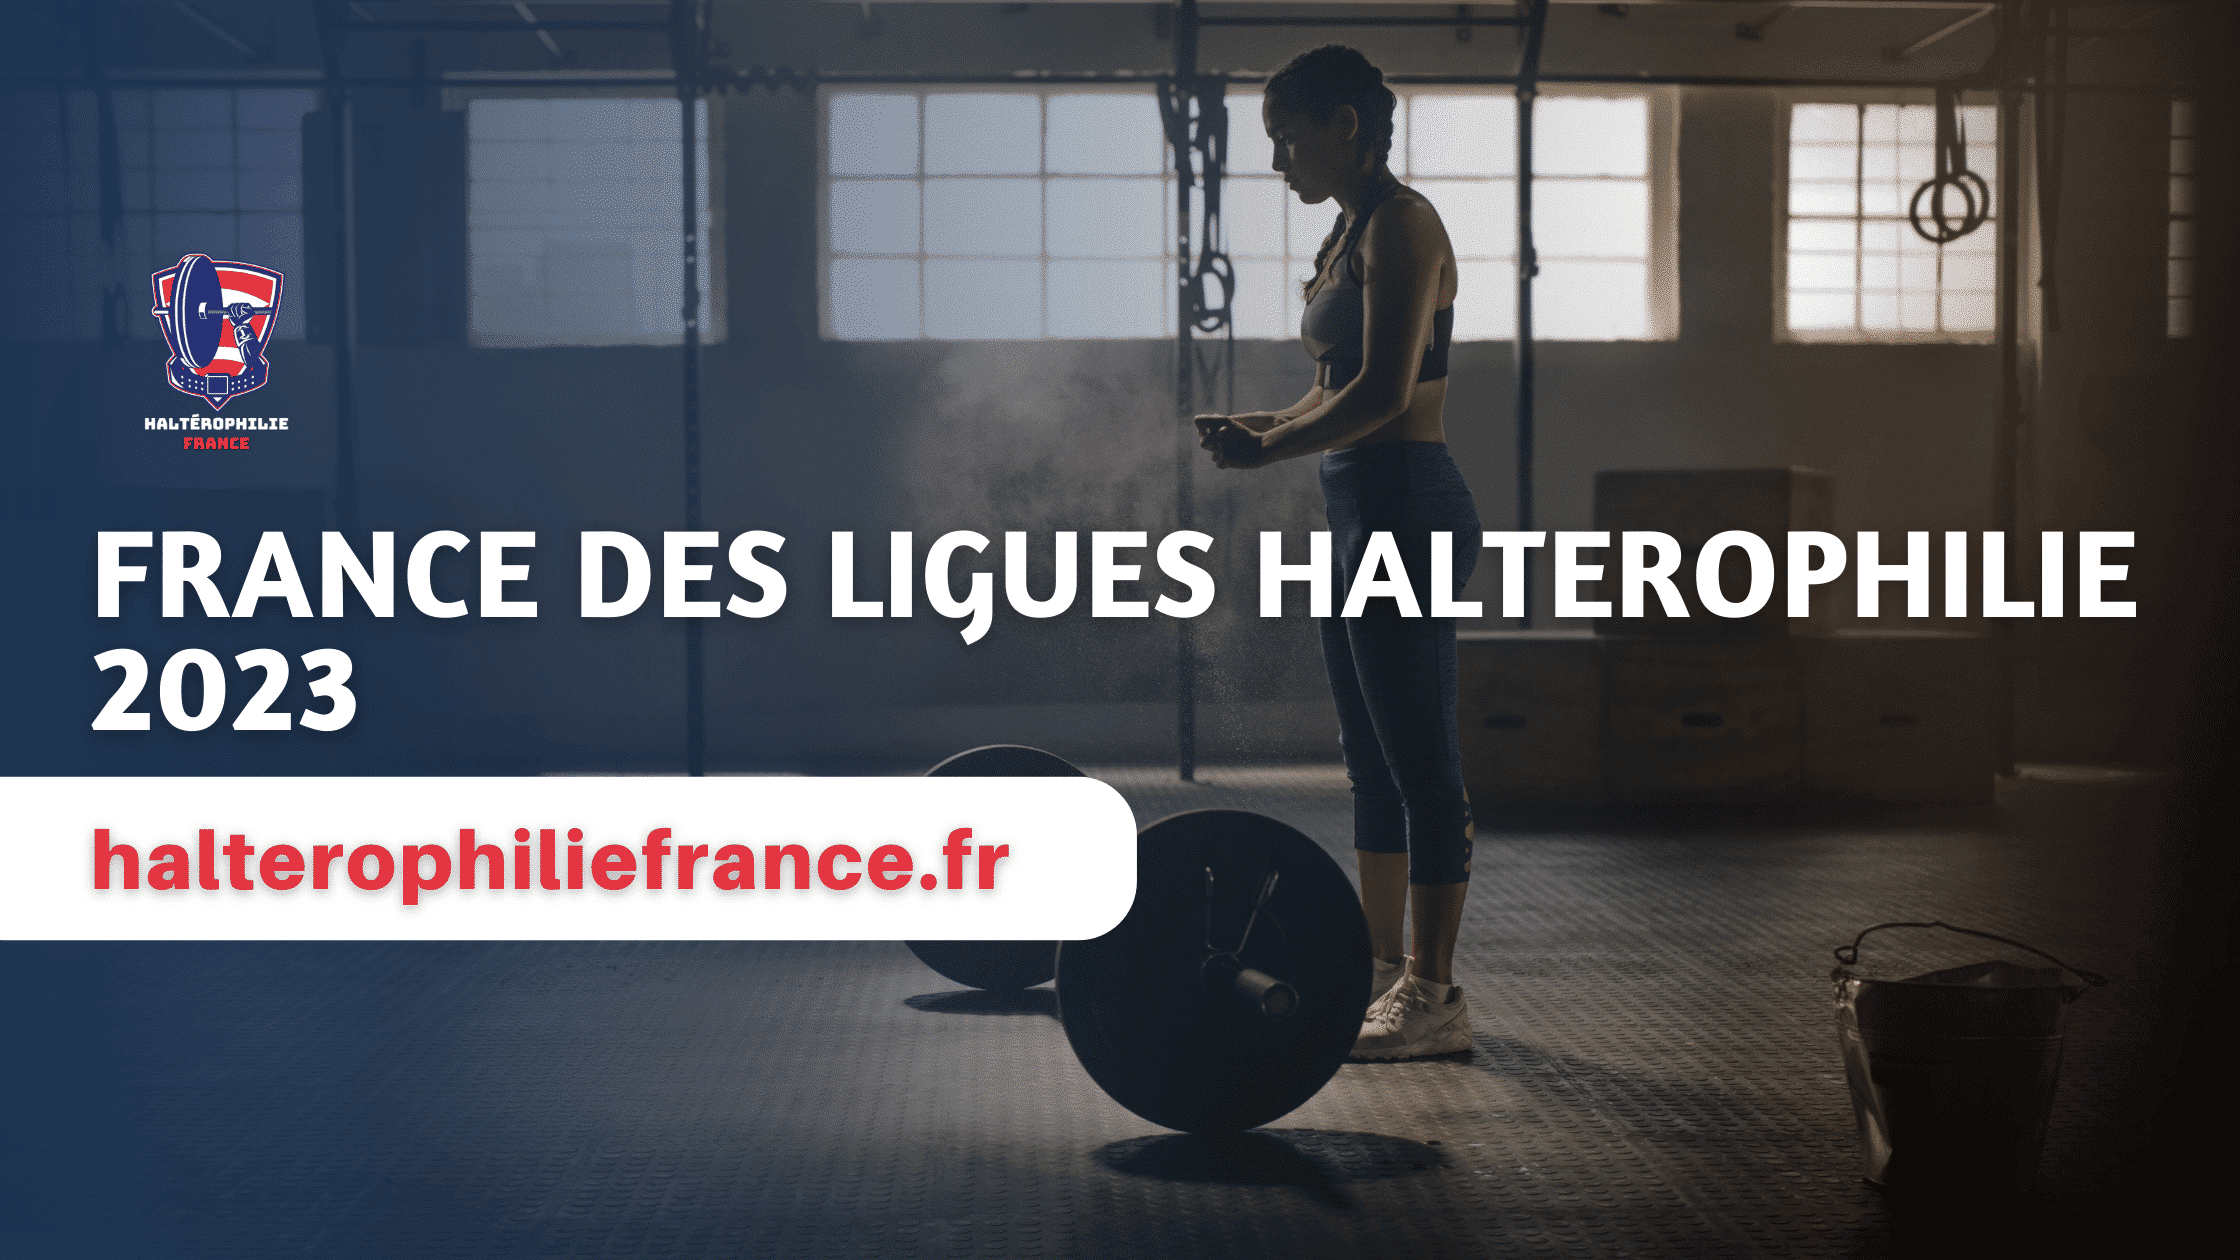 France des Ligues halterophilie 2023